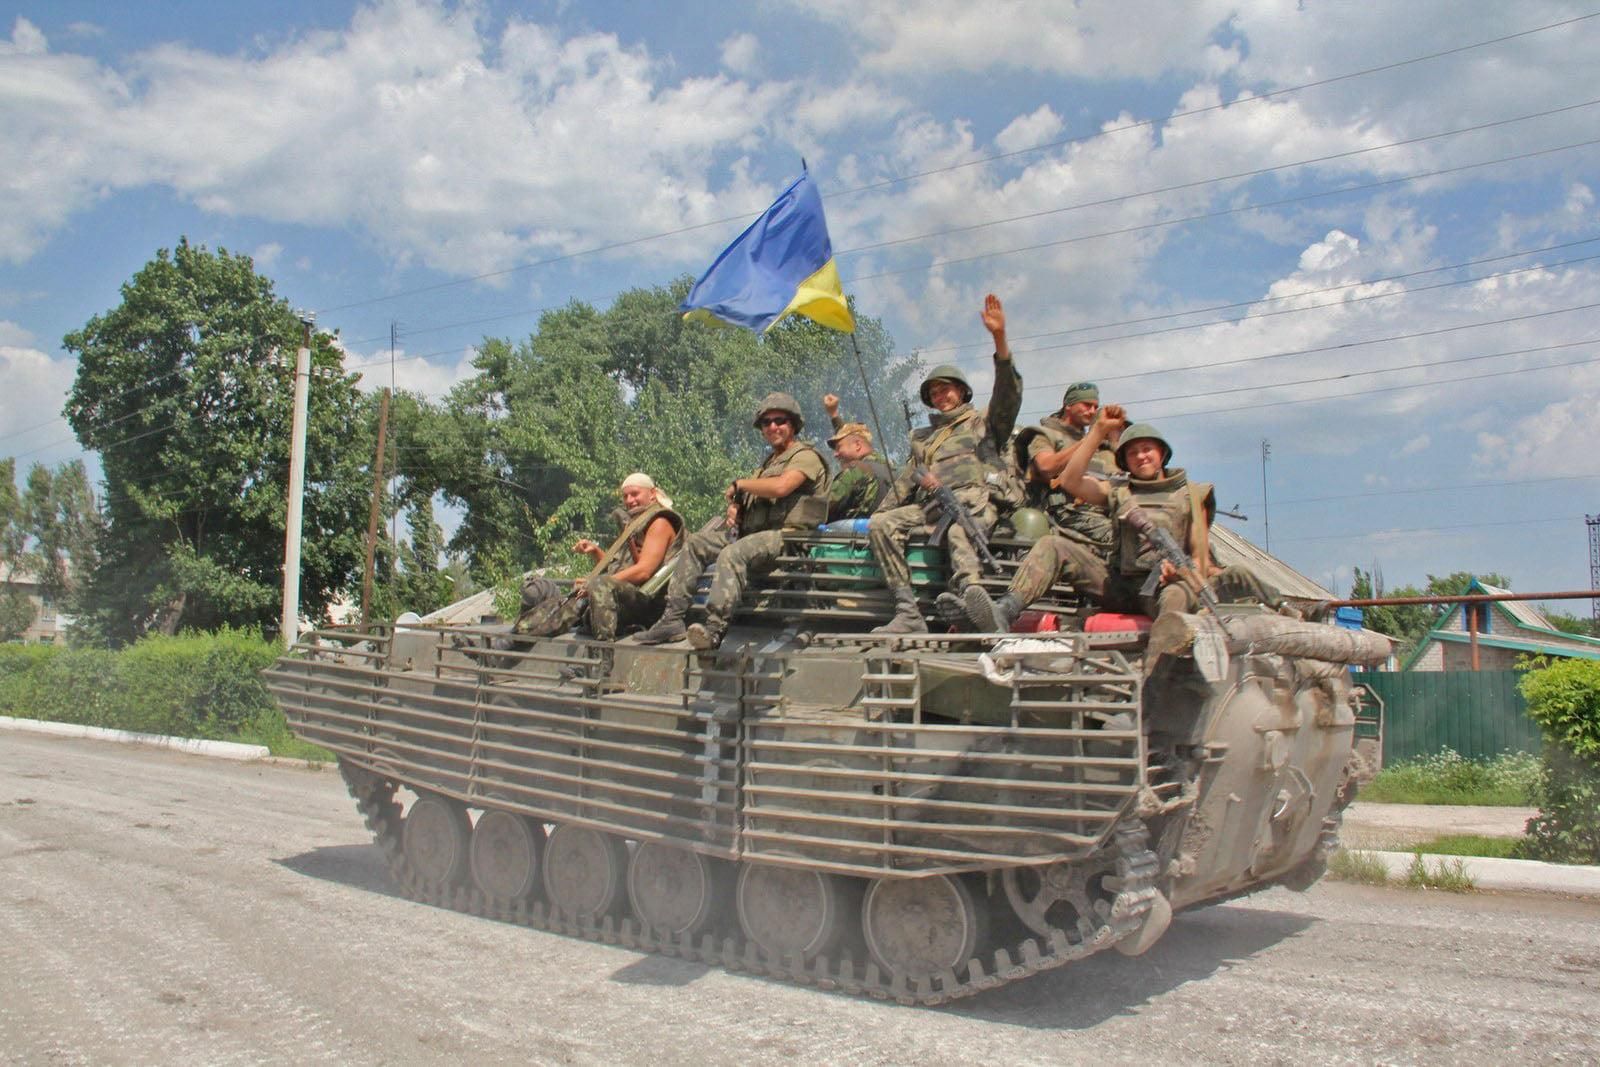 Годовщина освобождения Лисичанска украинскими войсками 24 июля 2014